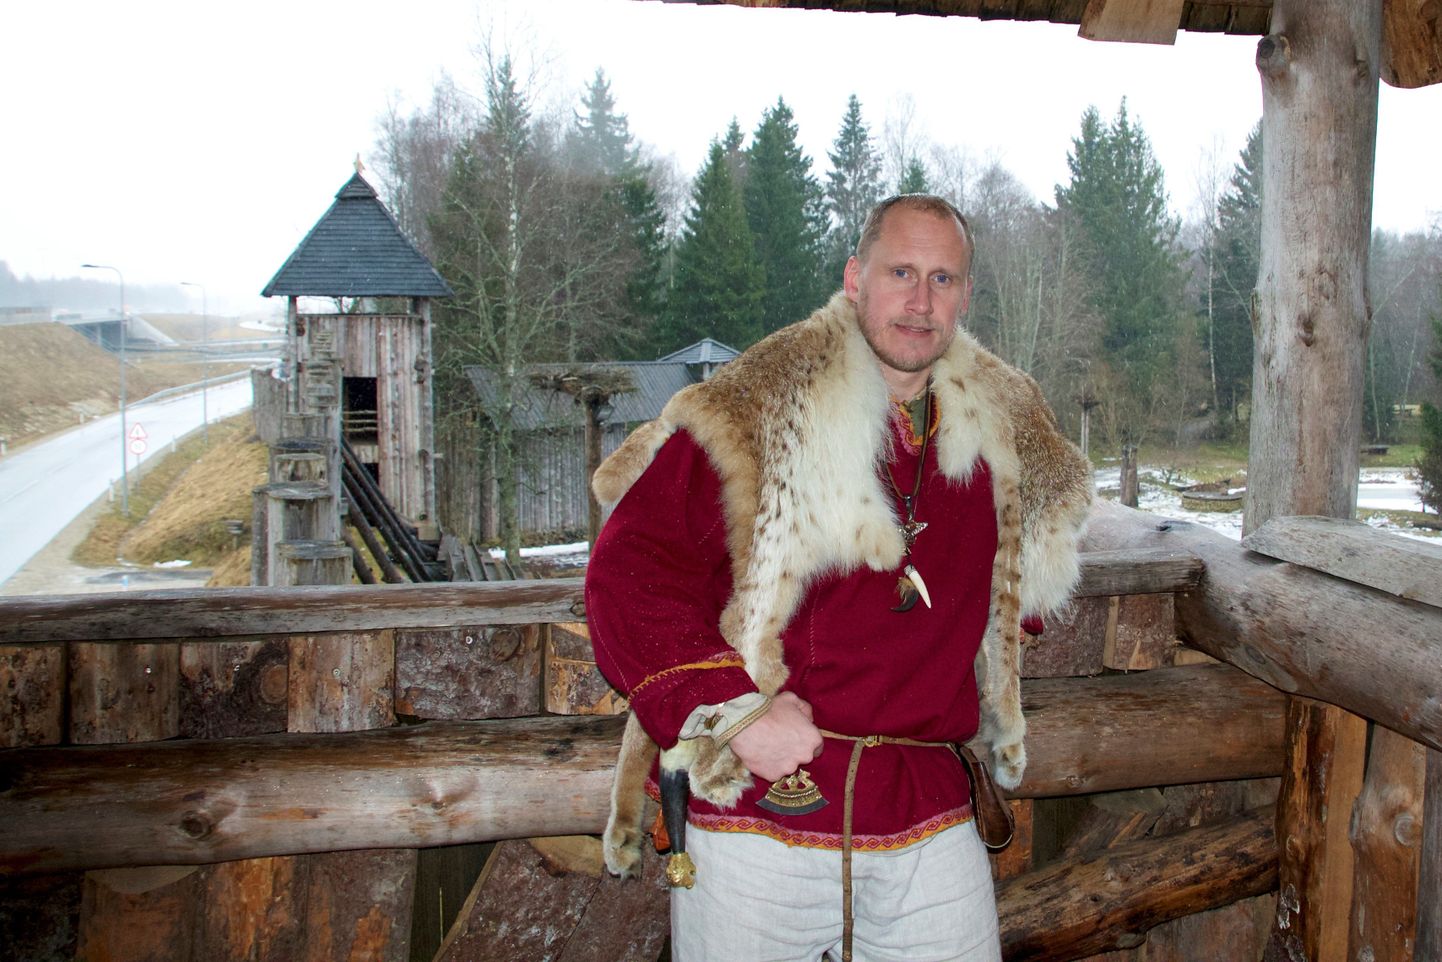 Viikingiküla asutaja Steve Hindrekson on suur ajaloohuviline ja viikingite kultuuri austaja.